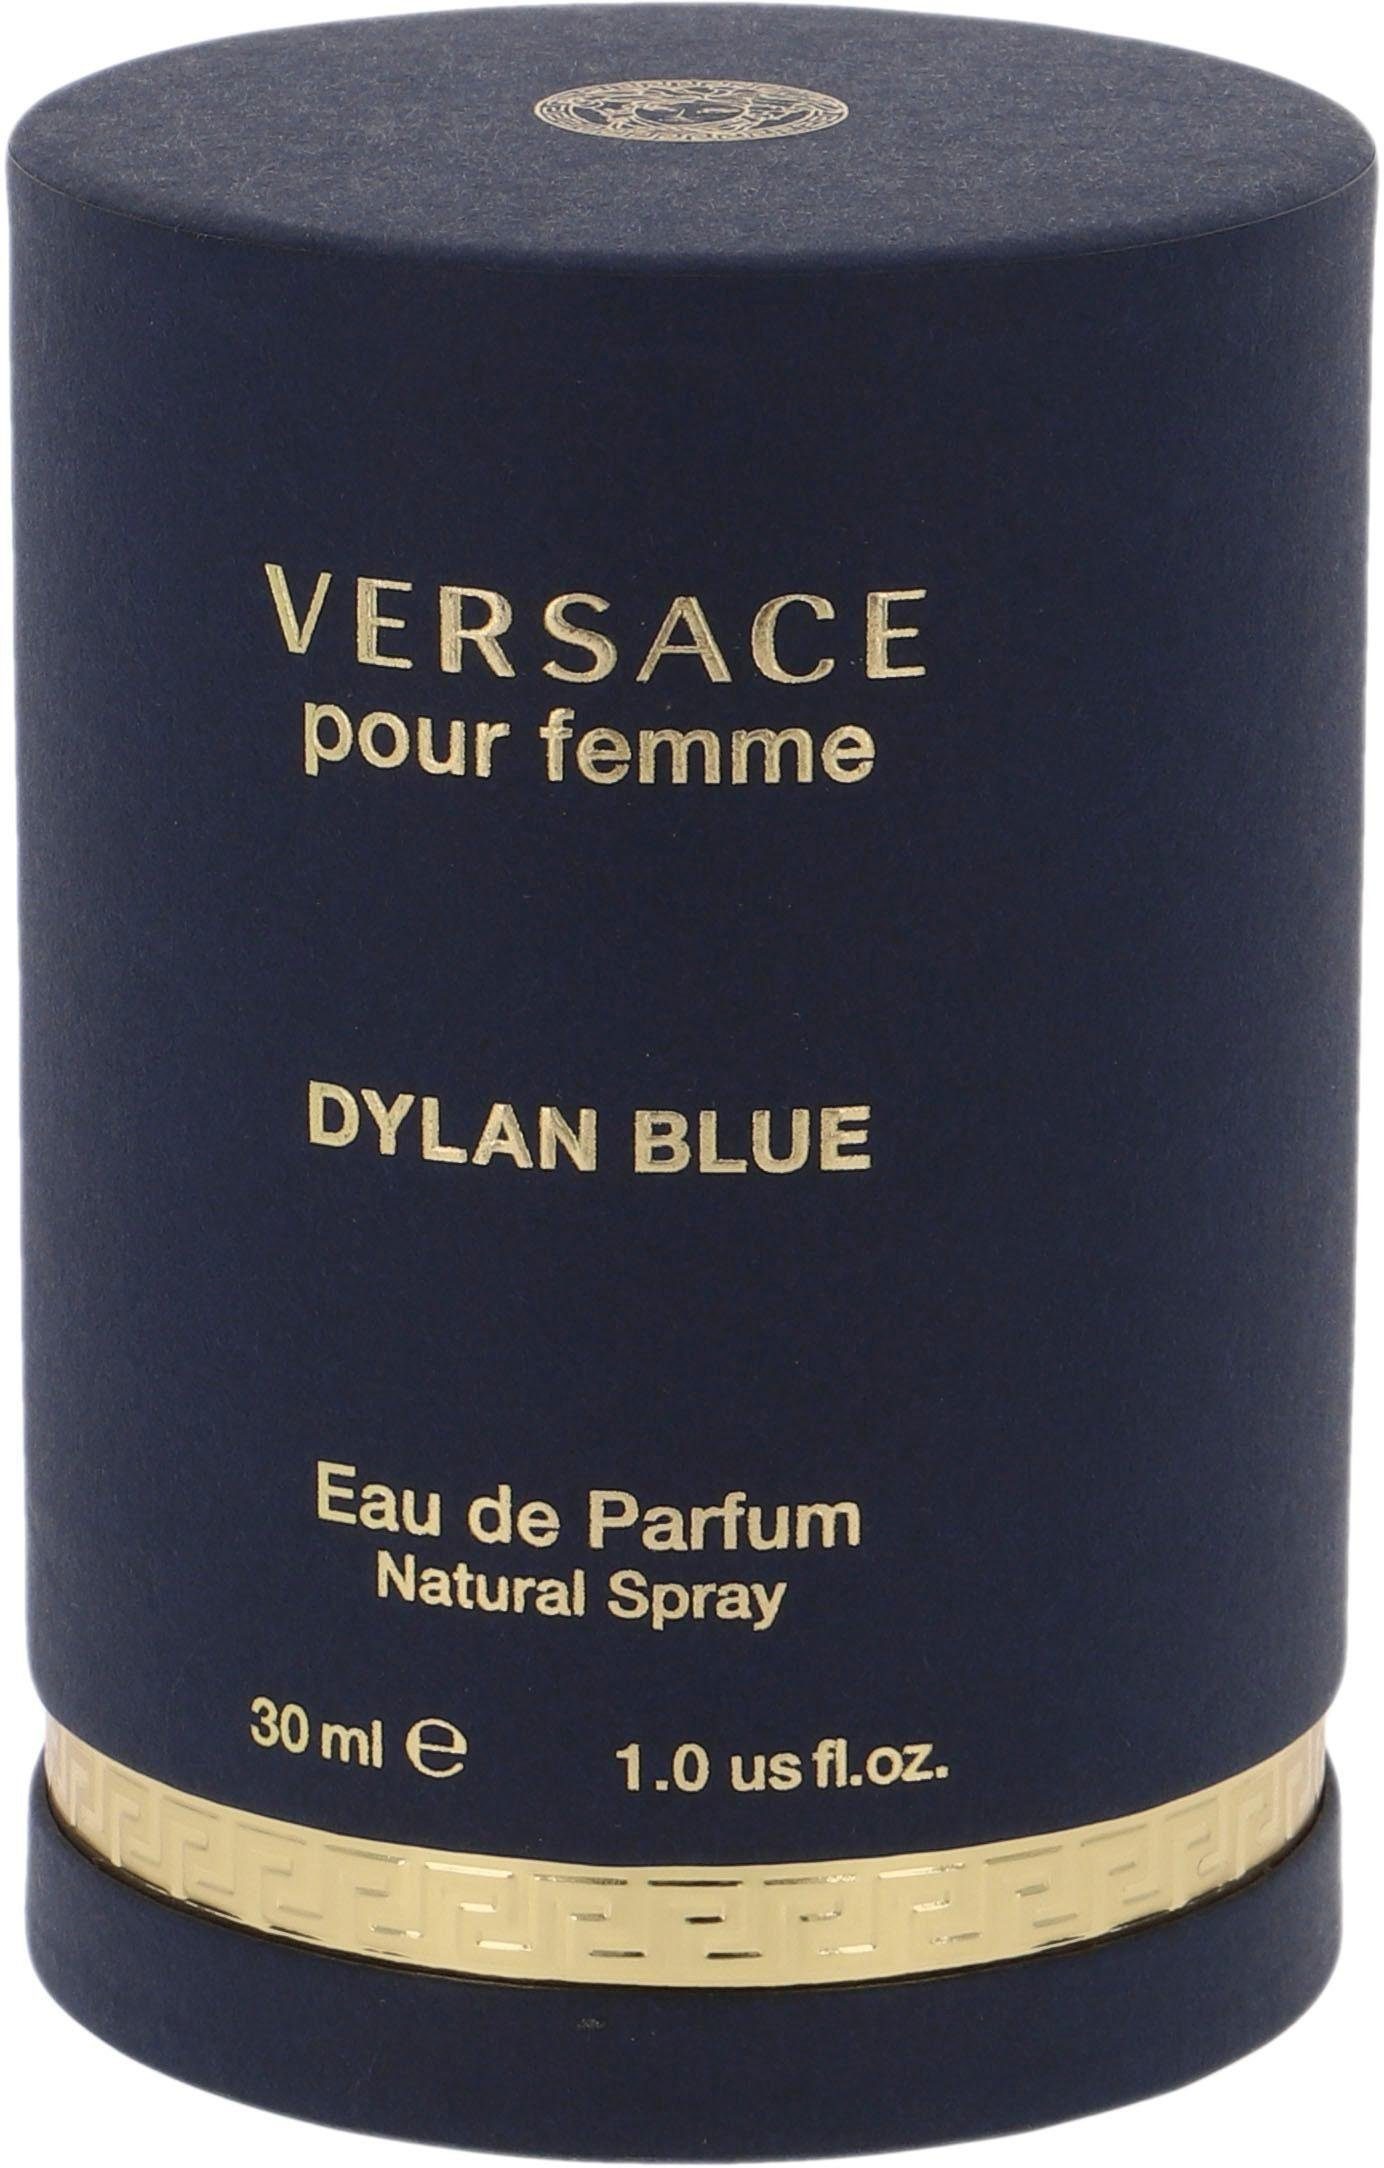 Versace Eau Femme Dylan Blue Pour Parfum de